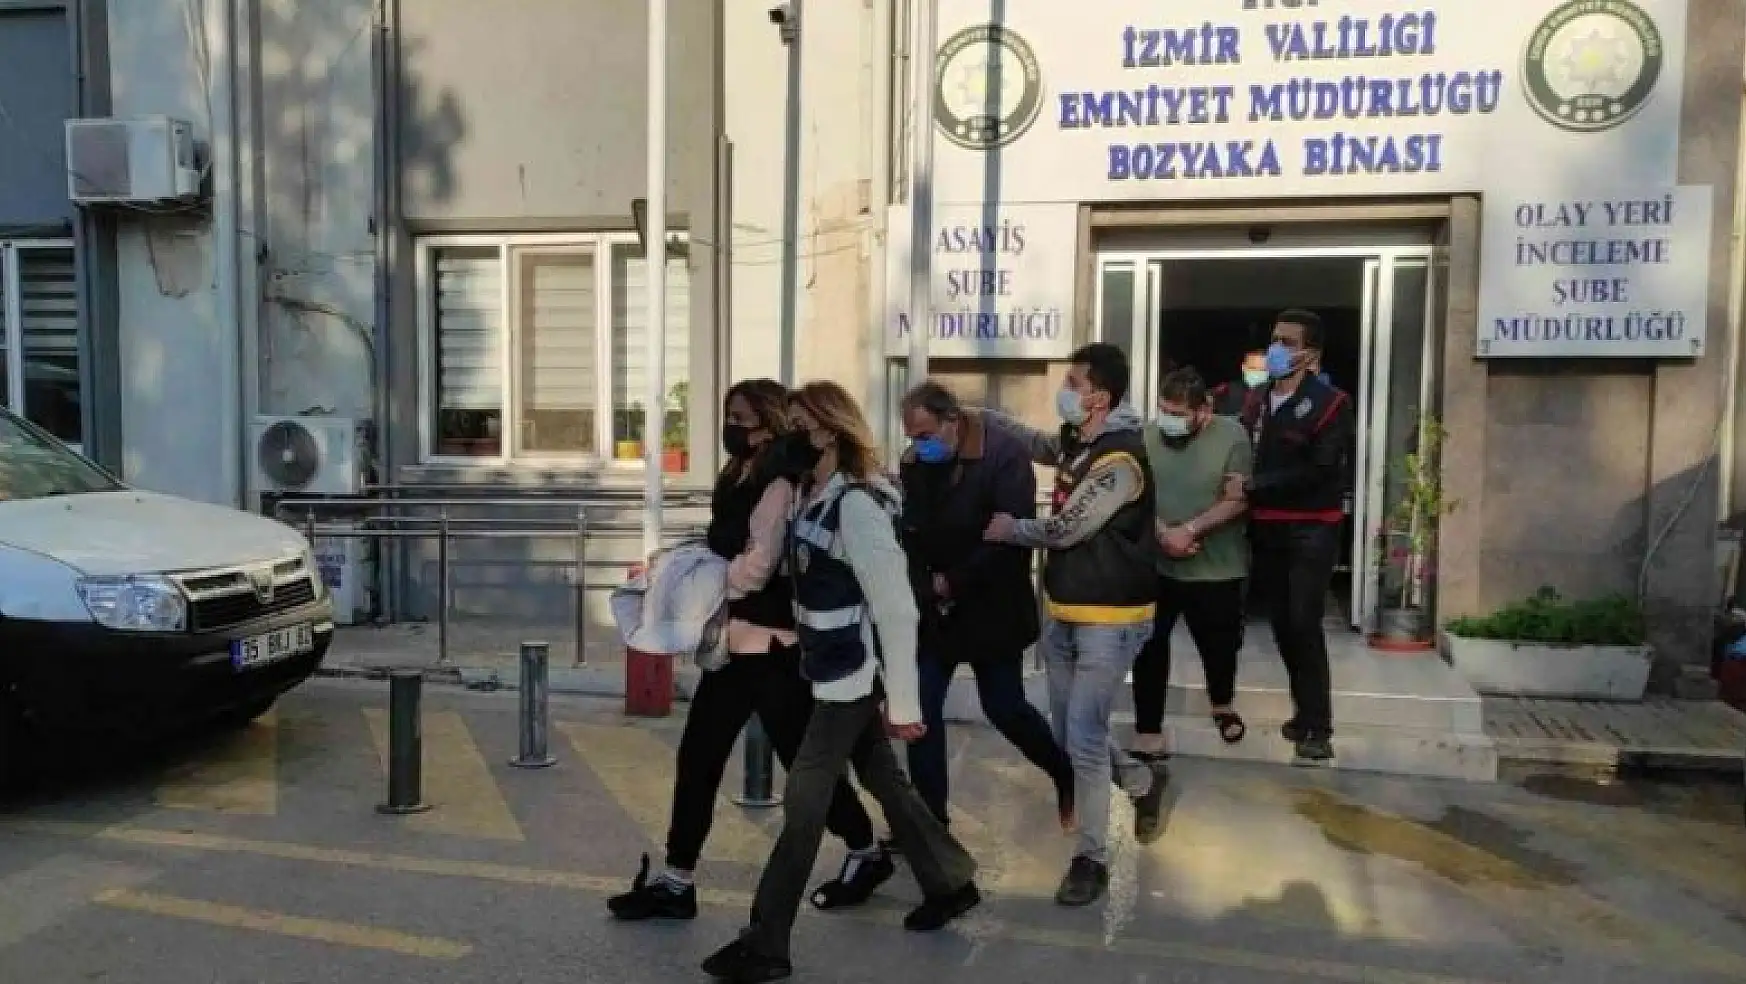 İzmir merkezli dolandırıcılık operasyonunda 15 tutuklama